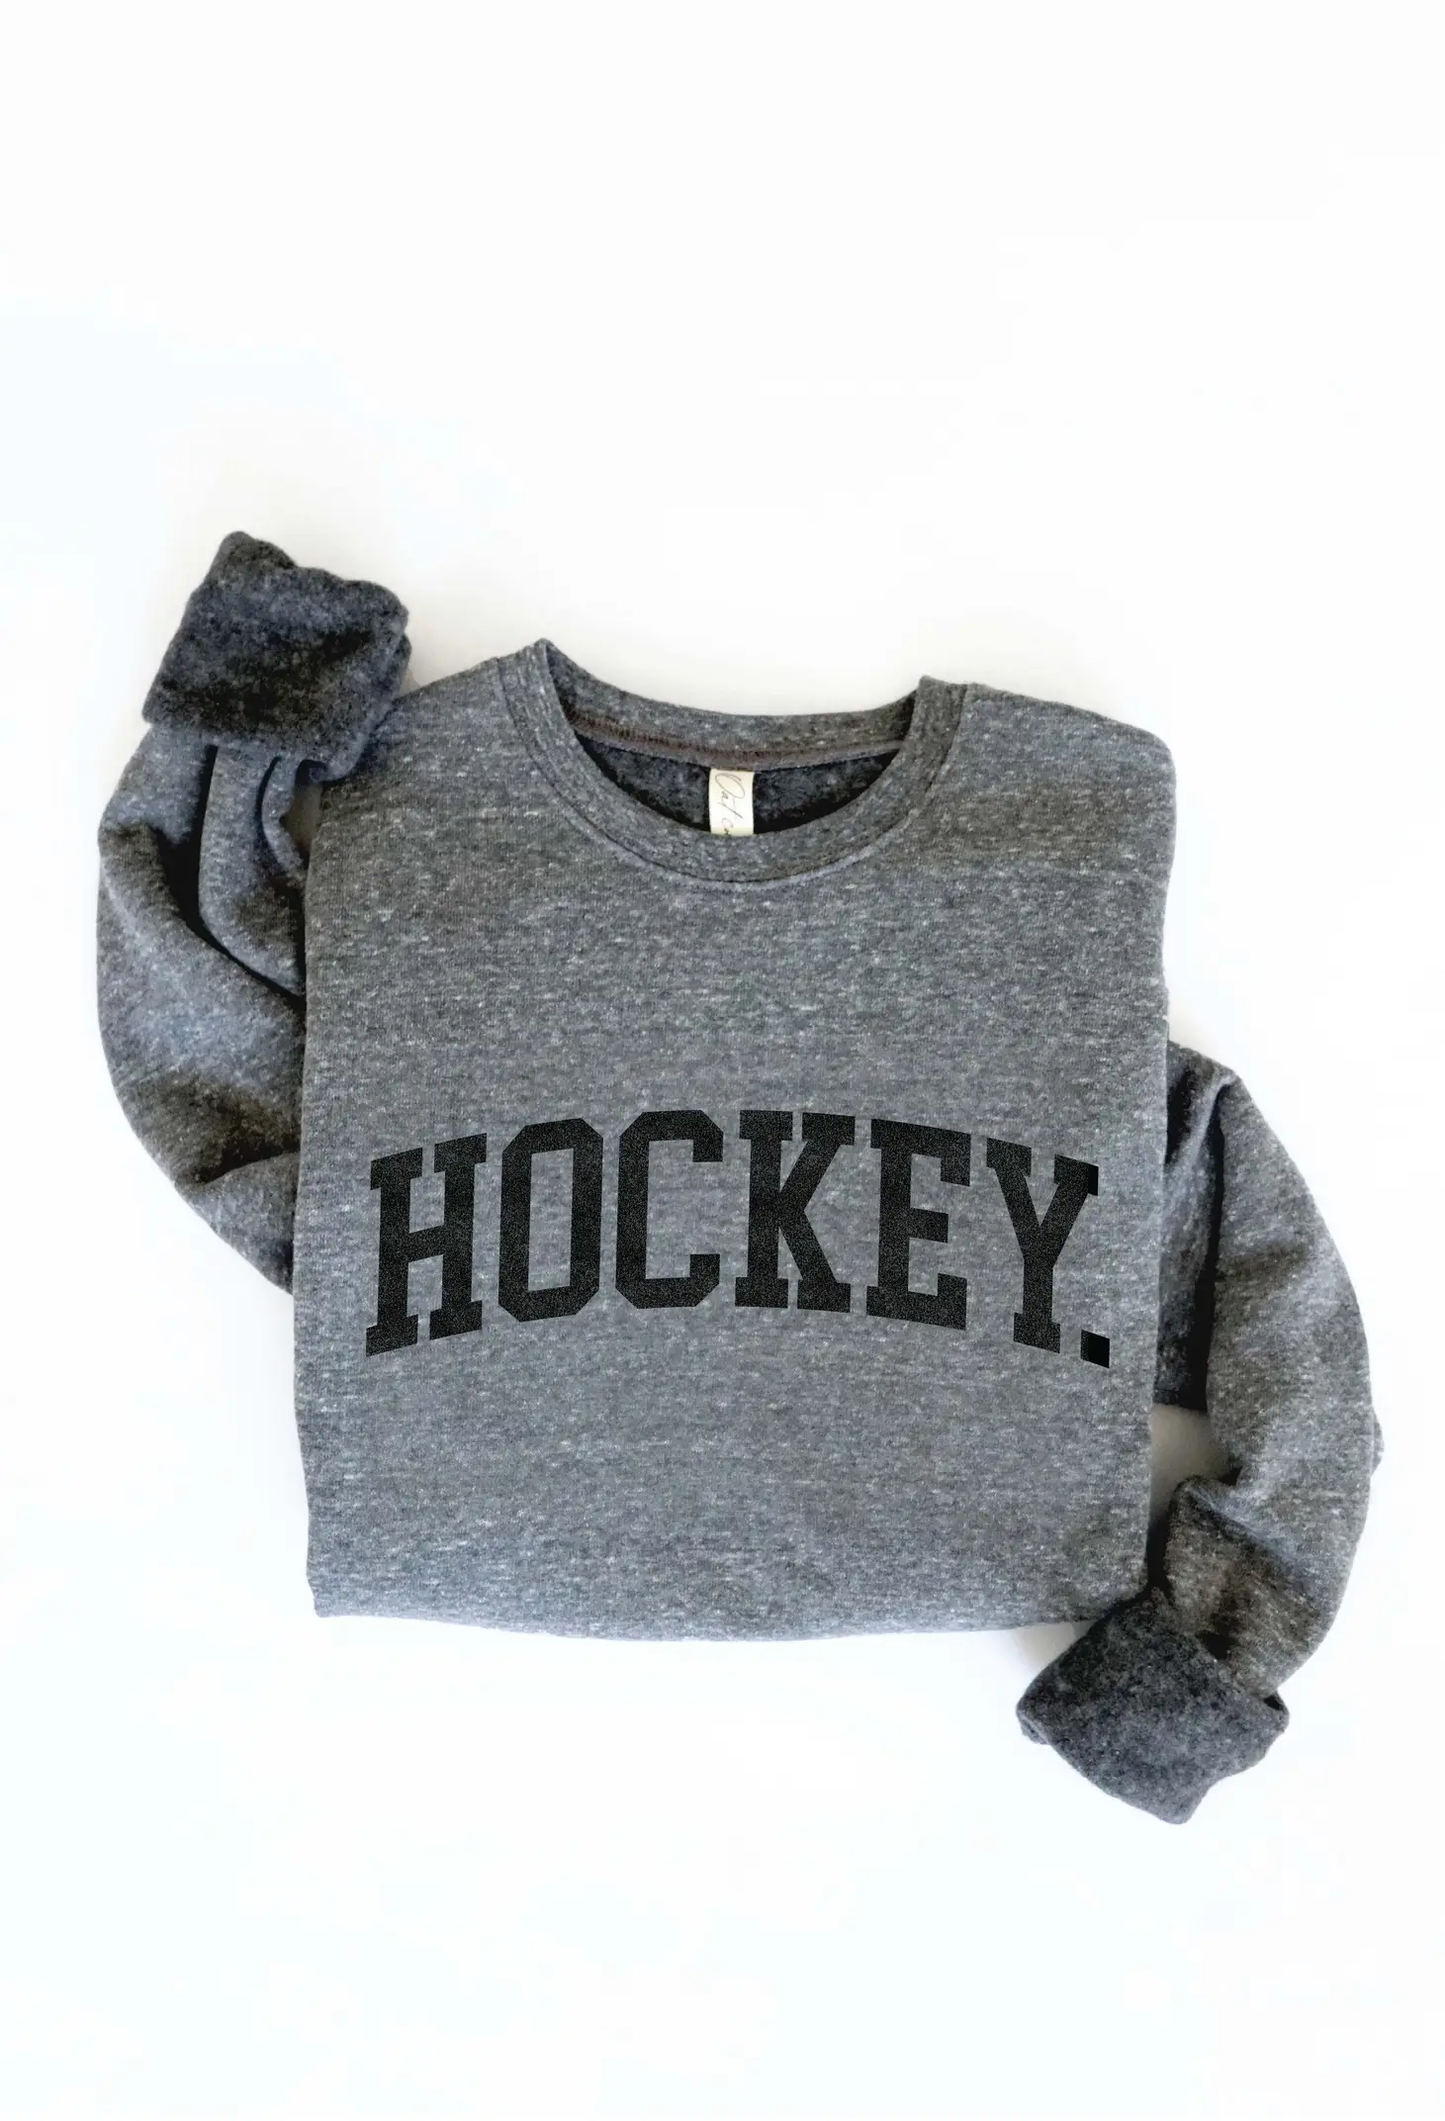 HOCKEY - Graphic Sweatshirt - Dark Grey